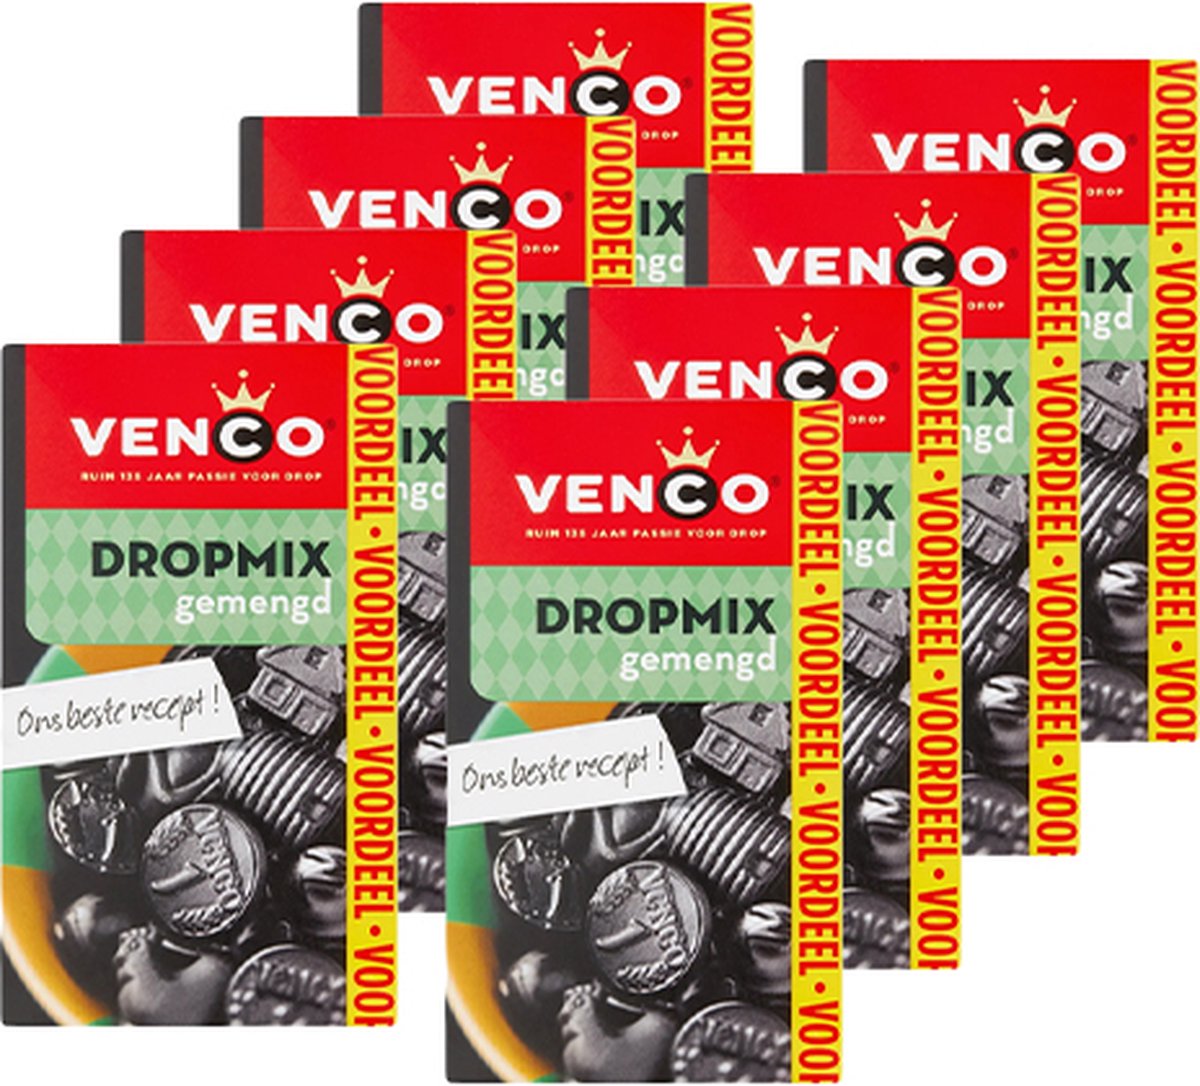 Venco - Dropmix (Gemengd) - 8x 475g